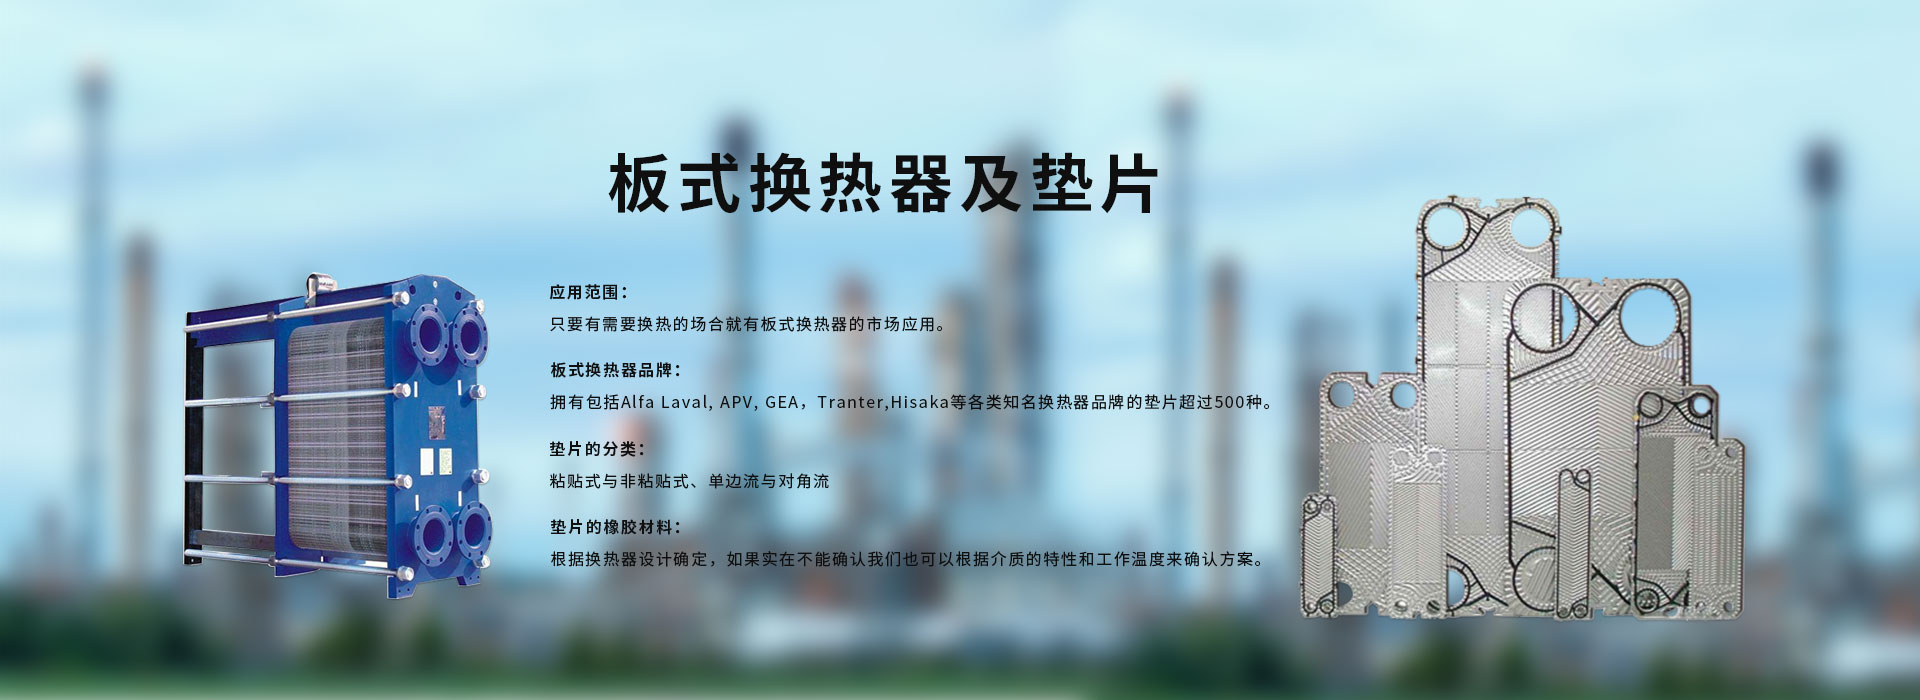 利通科技荣膺“2022年度中国橡胶工业百强企业”称号